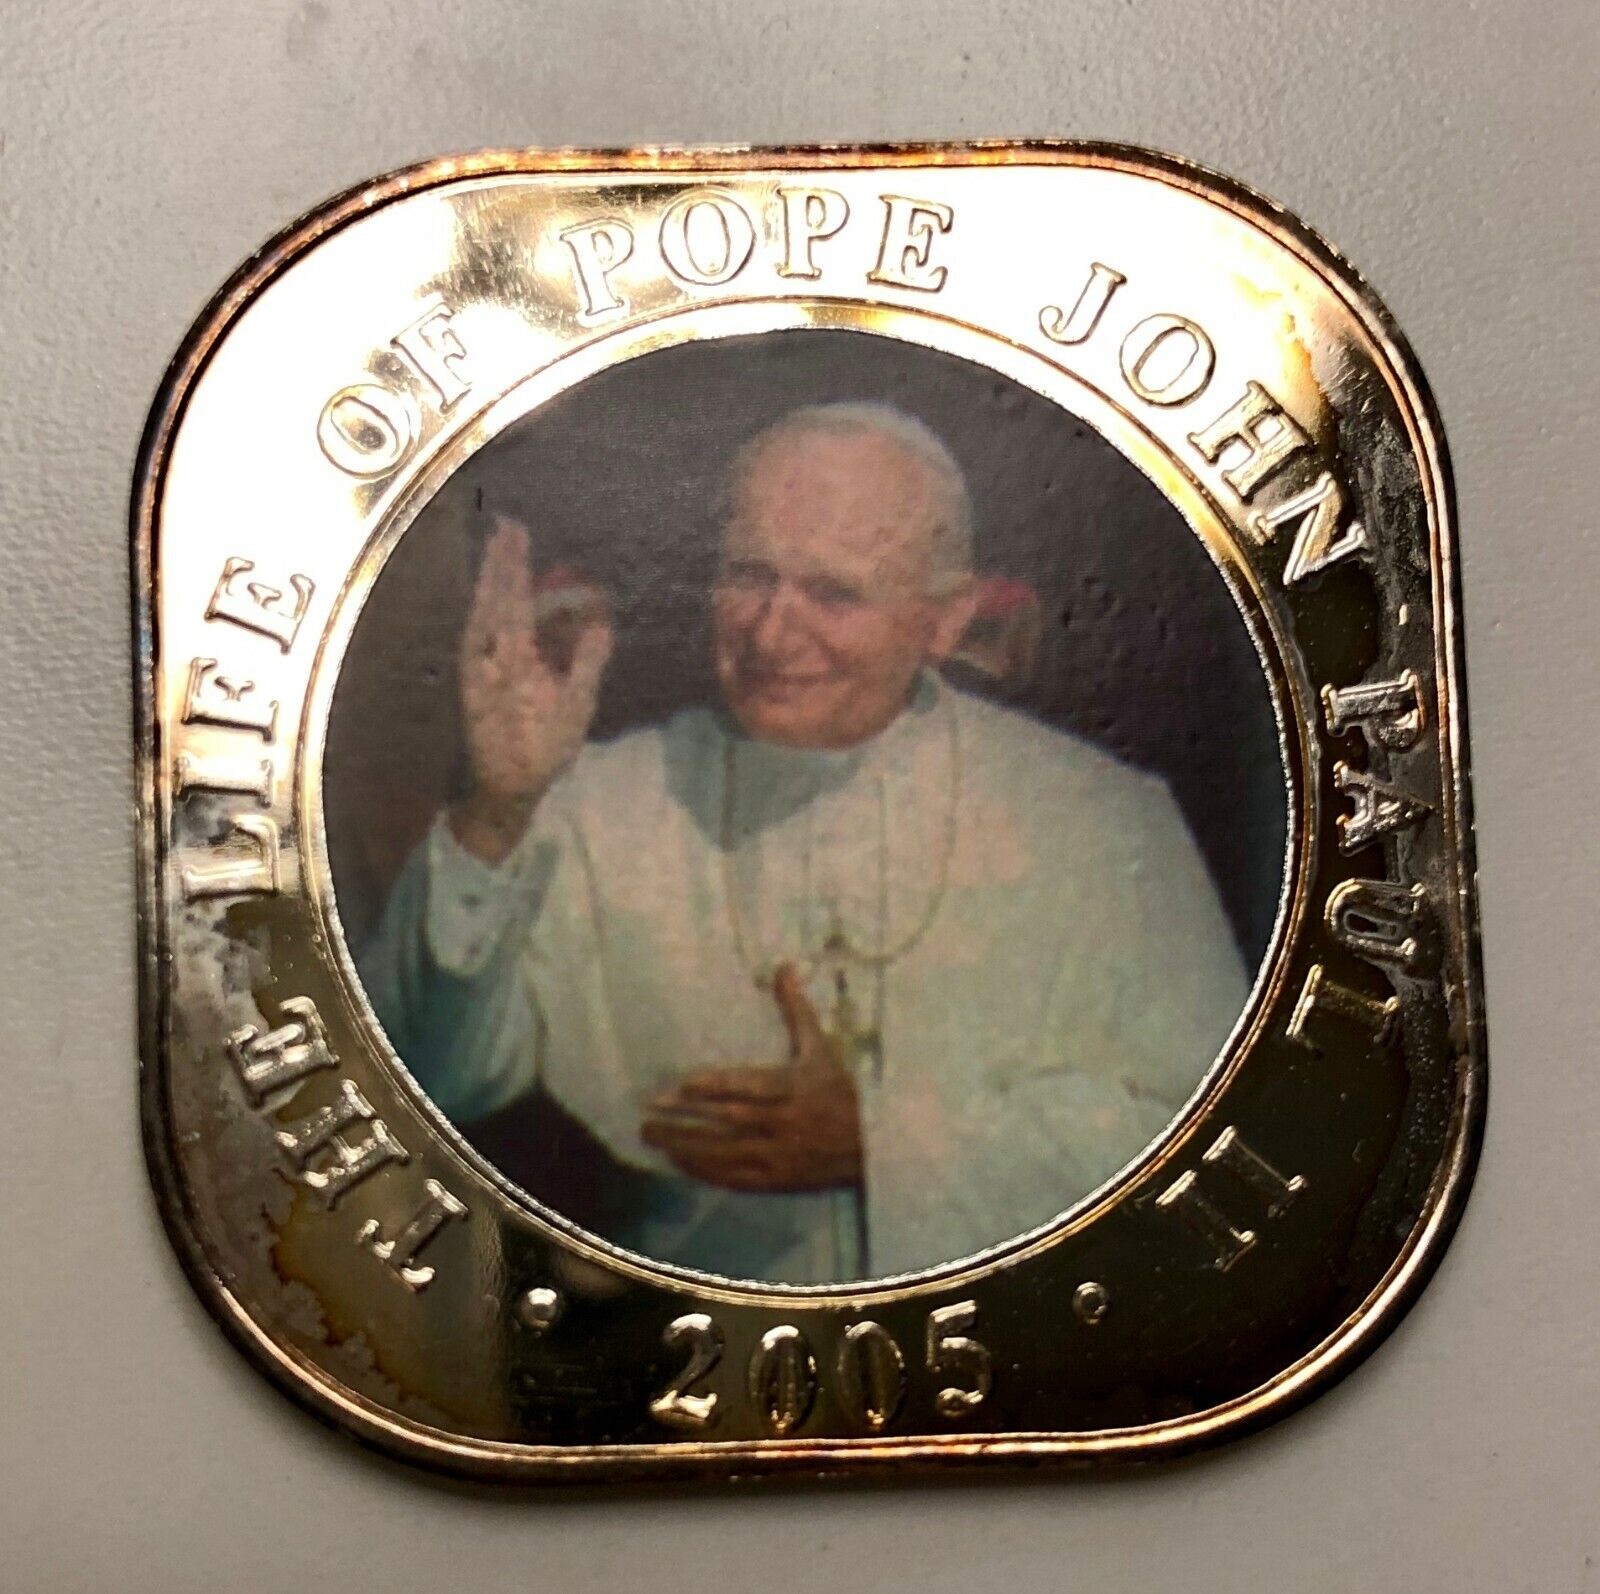 Africa 500 Shillings 2005 John Paul II. # eBay 36